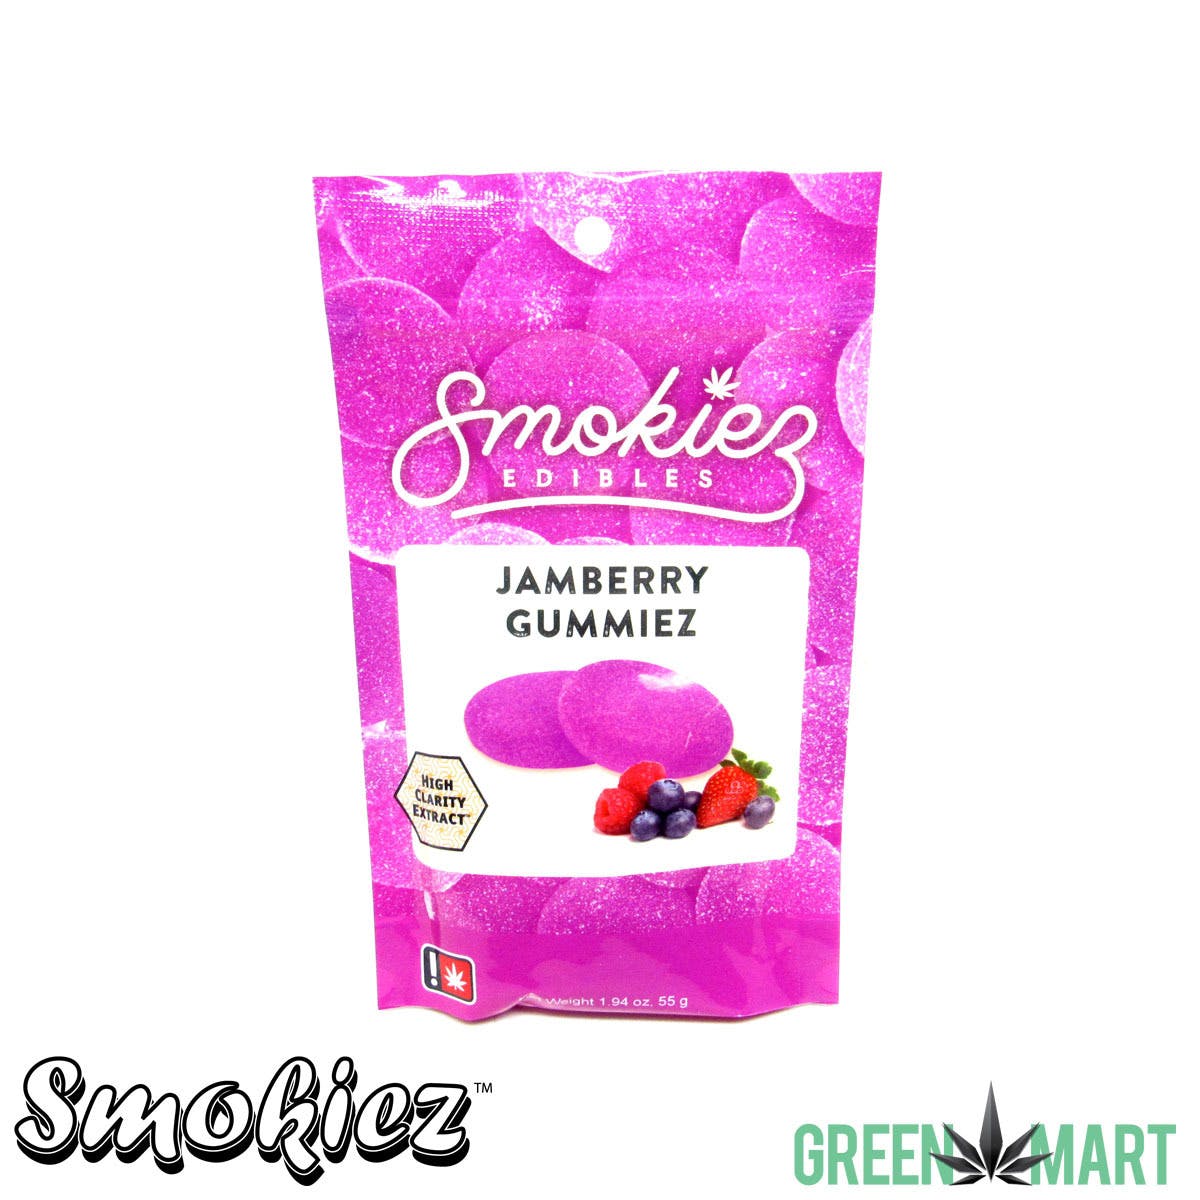 Smokiez Gummiez - Jamberry